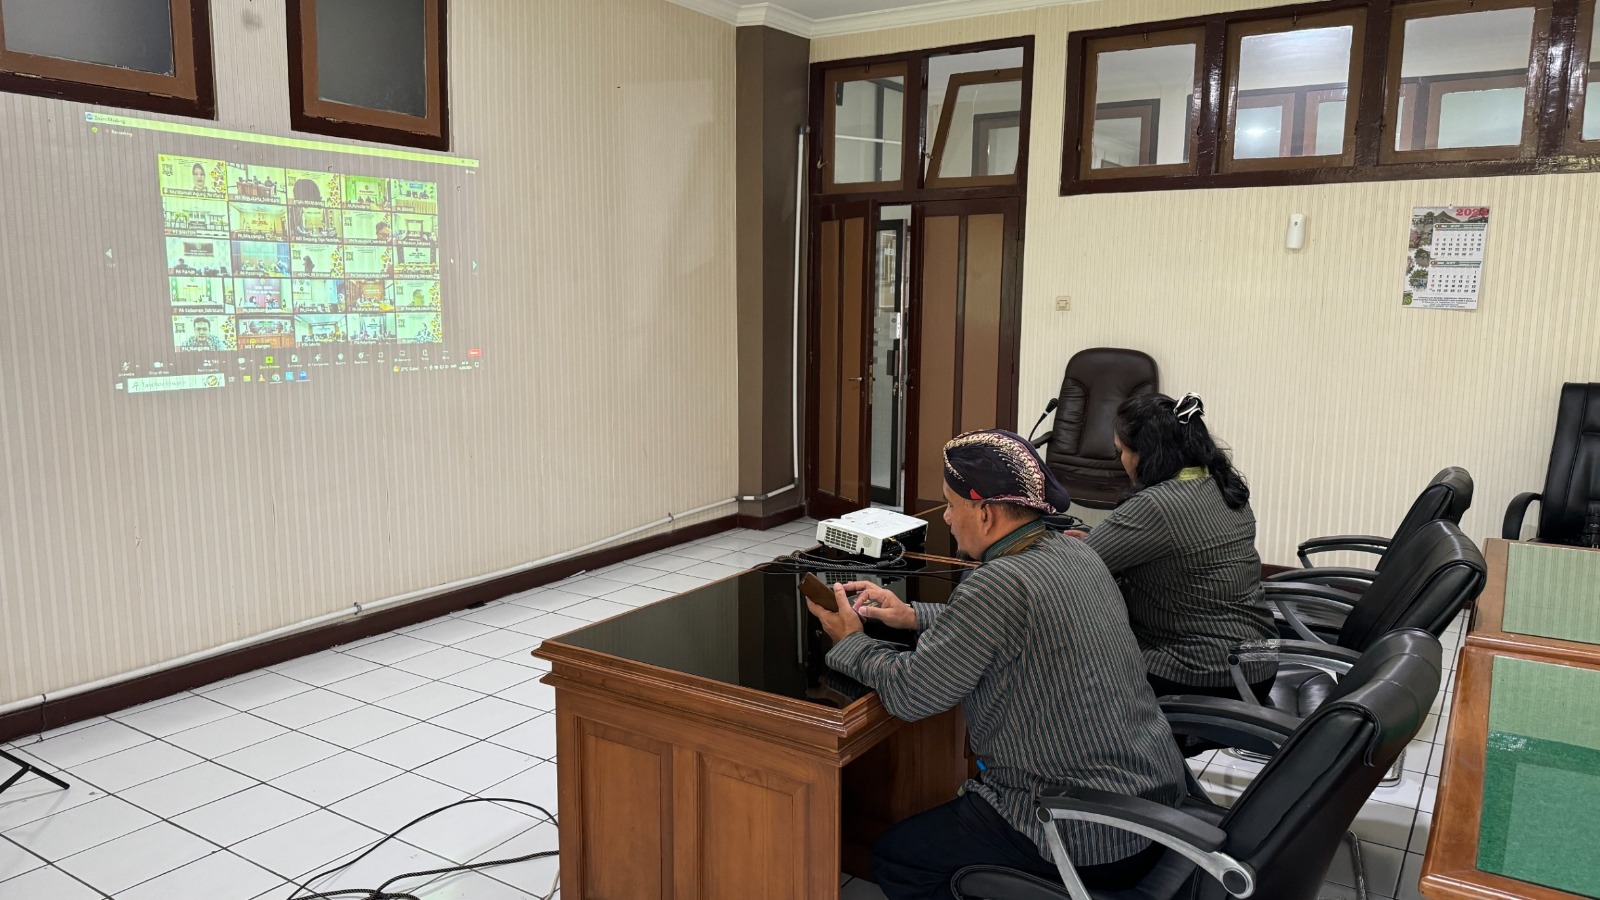 Pengadilan Negeri Yogyakarta Mengikuti Sosialisasi Juknis Pengusulan RKBMN di Lingkungan Mahkamah Agung dan Badan Peradilan dibawahnya